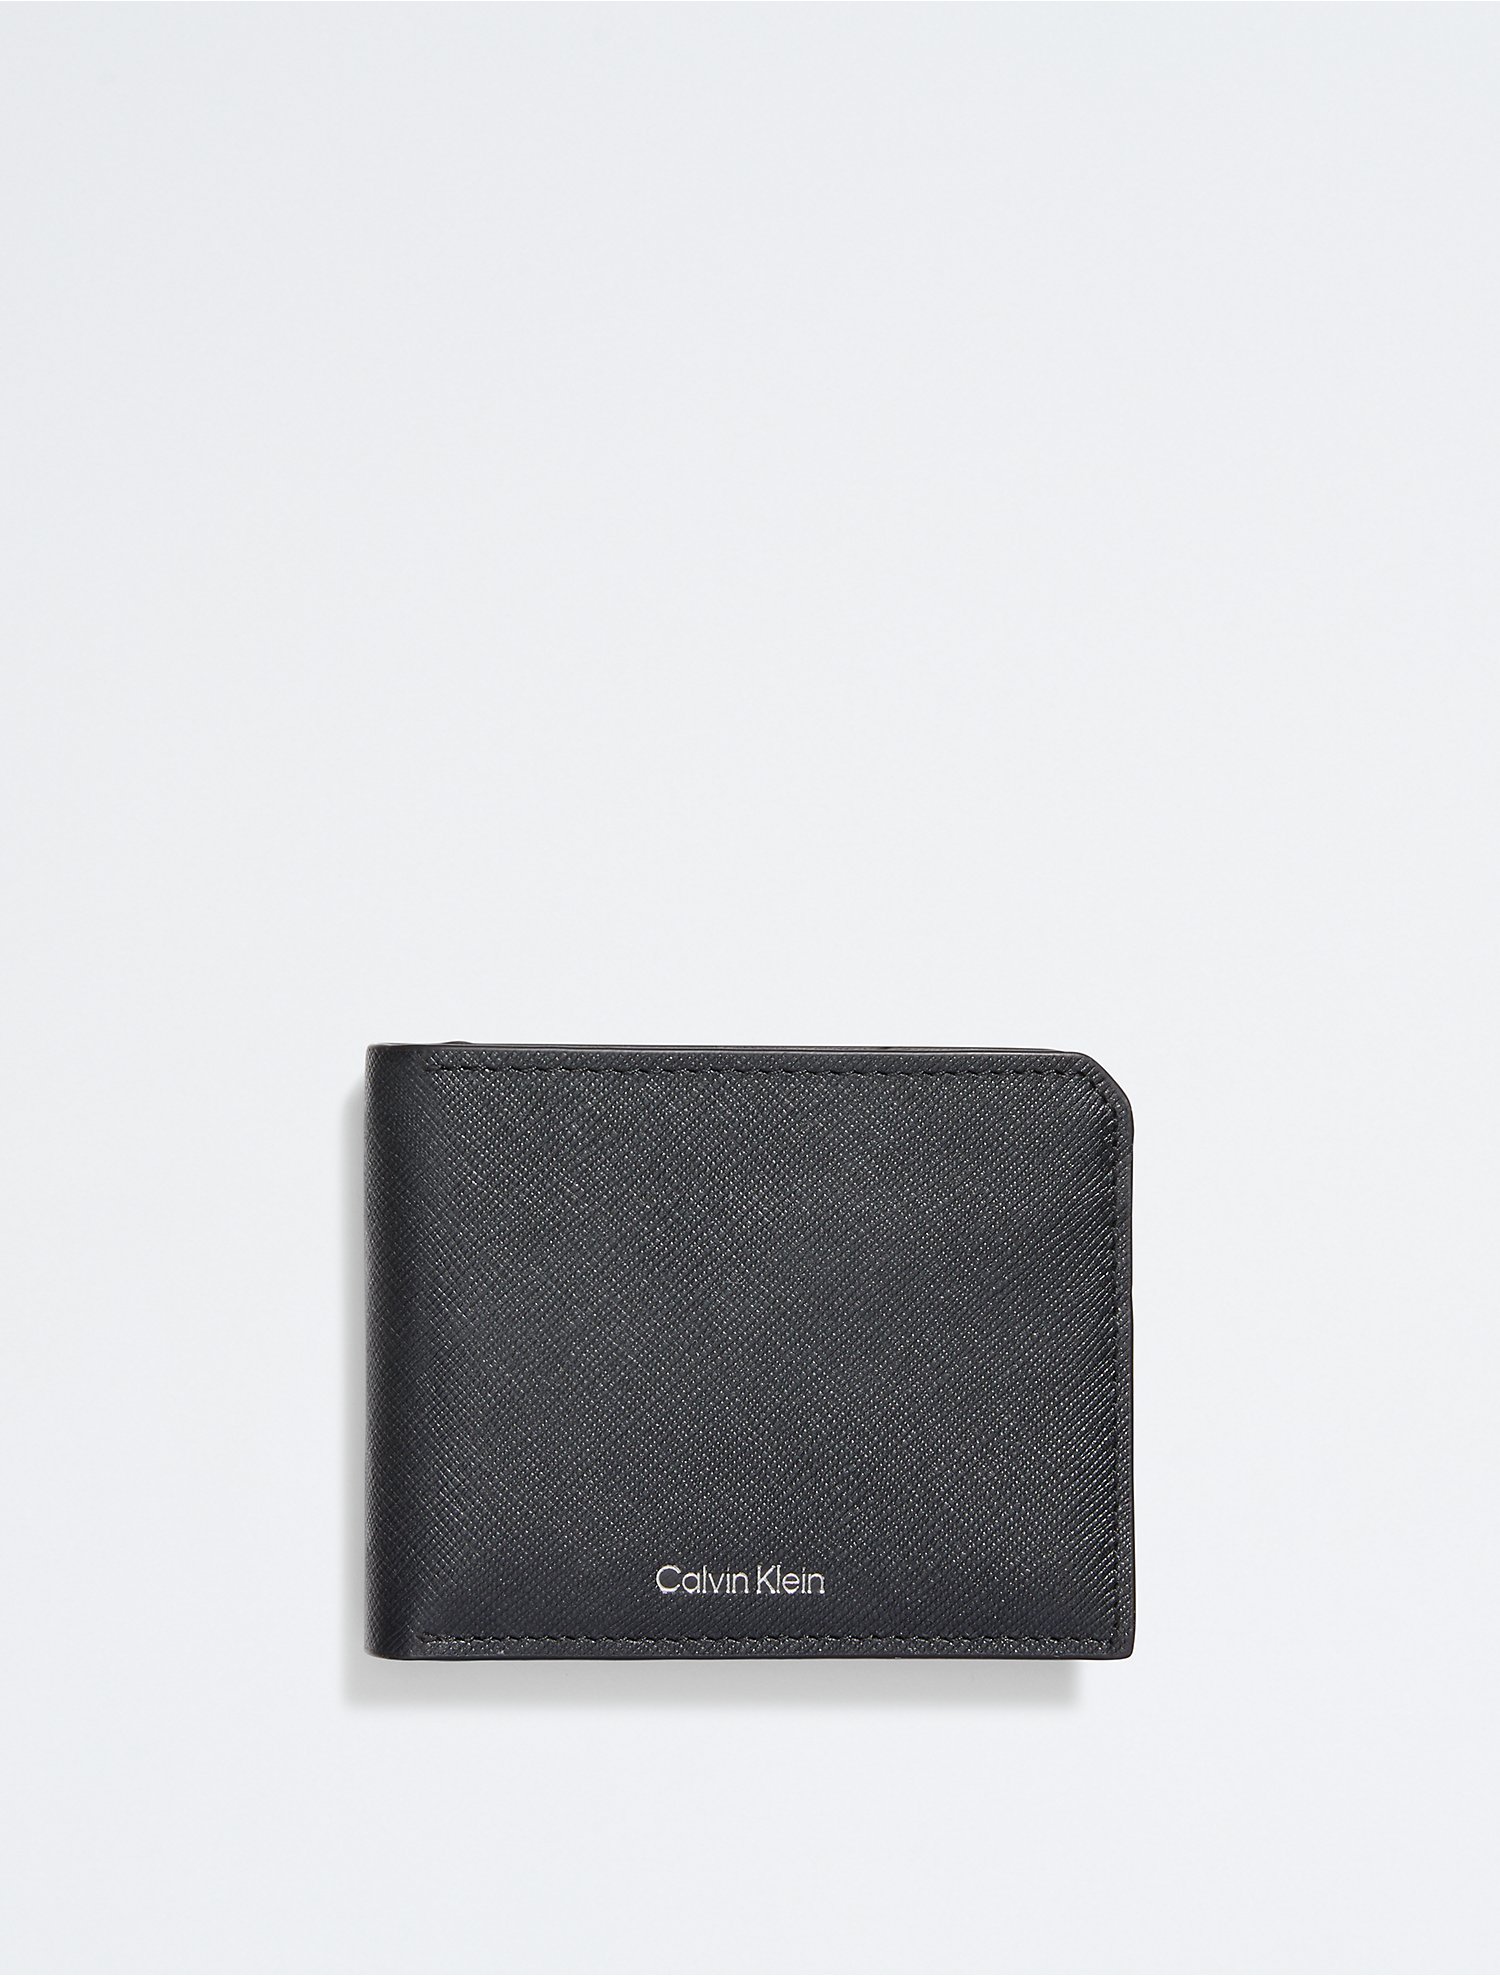 Begeleiden Speels protest Saffiano Leather Coin Pouch Bifold Wallet | Calvin Klein